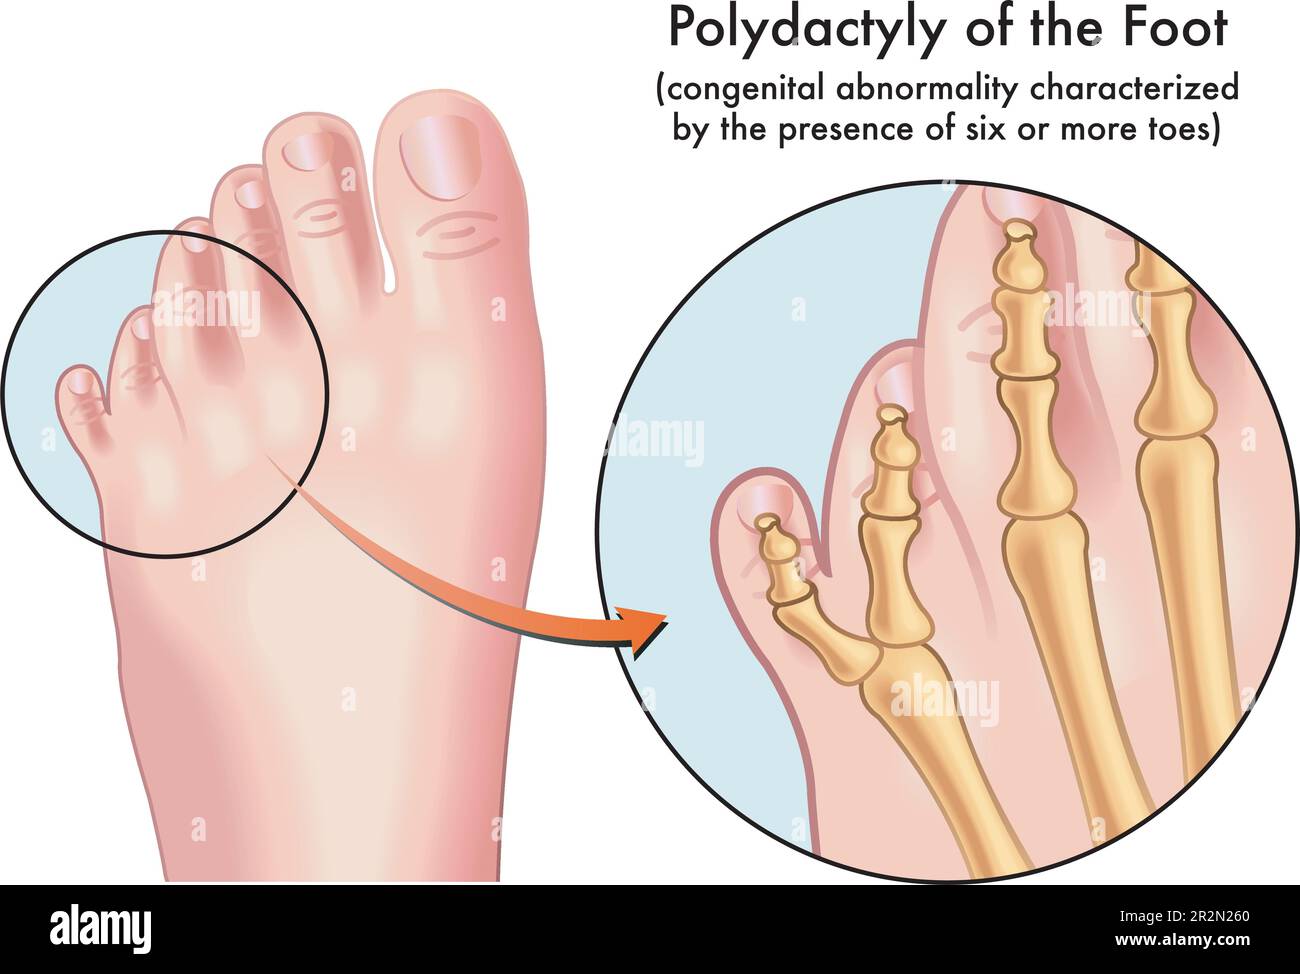 Medizinische Illustration eines Fußes mit Polydaktylie, einer angeborenen Fehlbildung, die durch das Vorhandensein von sechs oder mehr Zehen gekennzeichnet ist, mit Anmerkung Stock Vektor